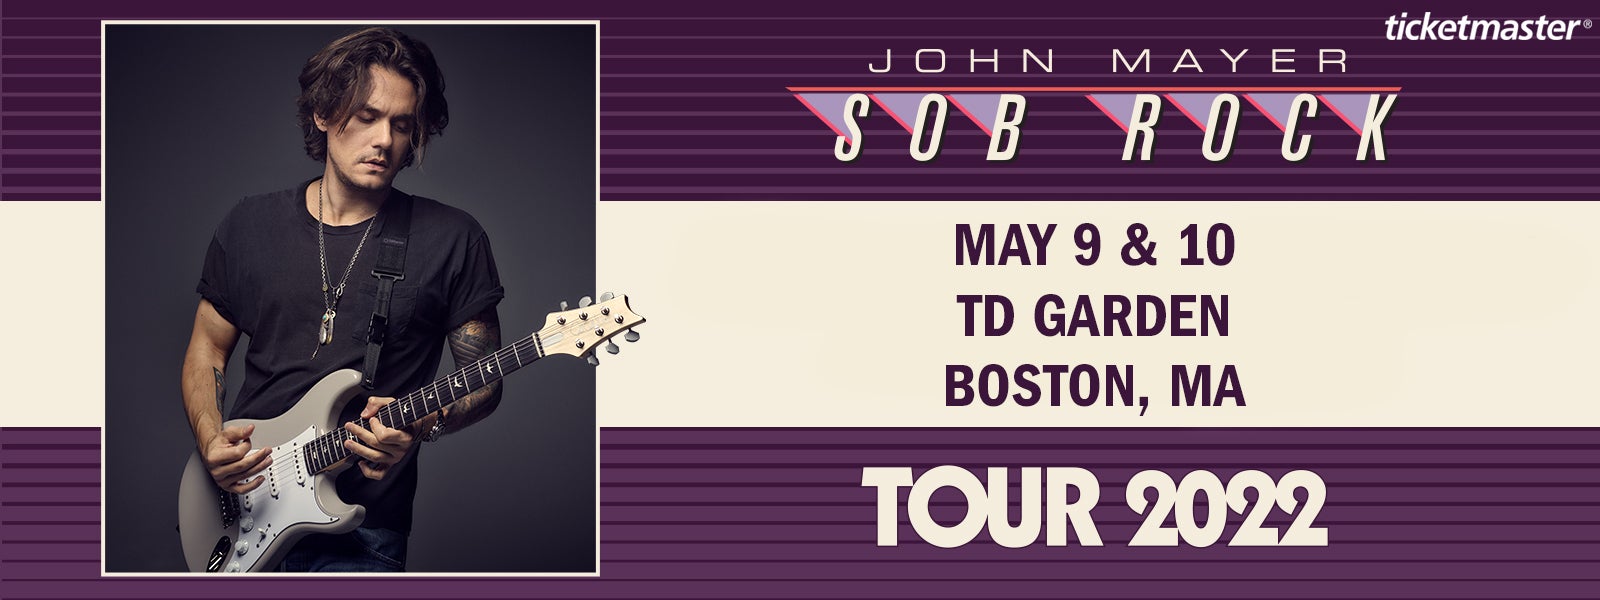 John Mayer: SOB ROCK TOUR 2022 